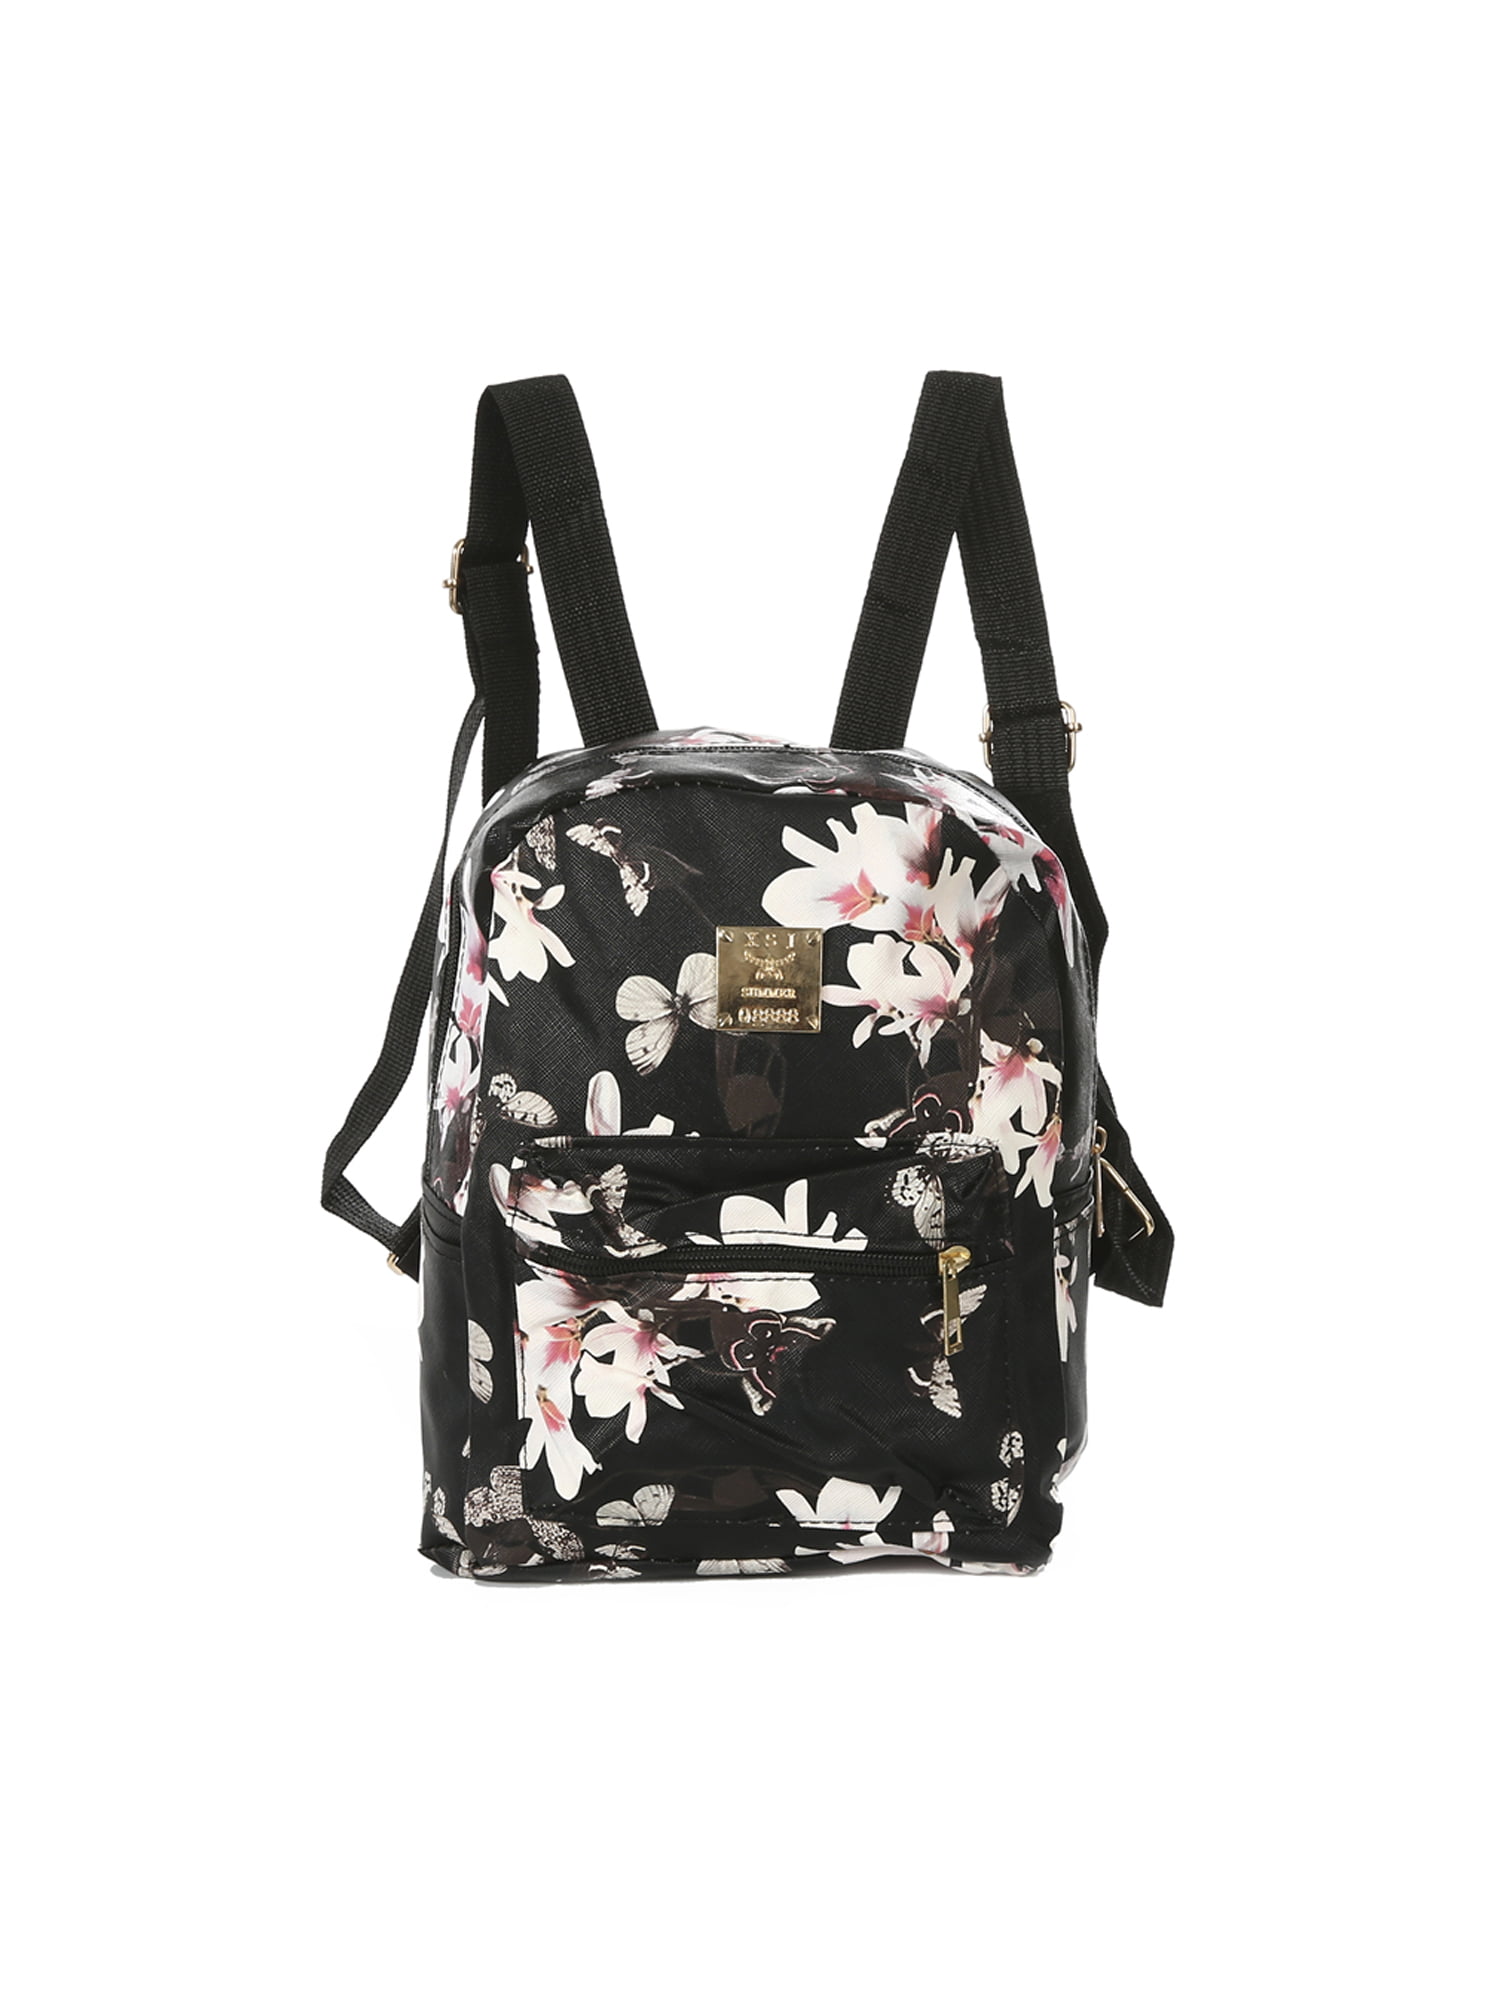 Details about  / Bag Backpack Leather Women Travel School Rucksack Handbag Mini Shoulder Girls